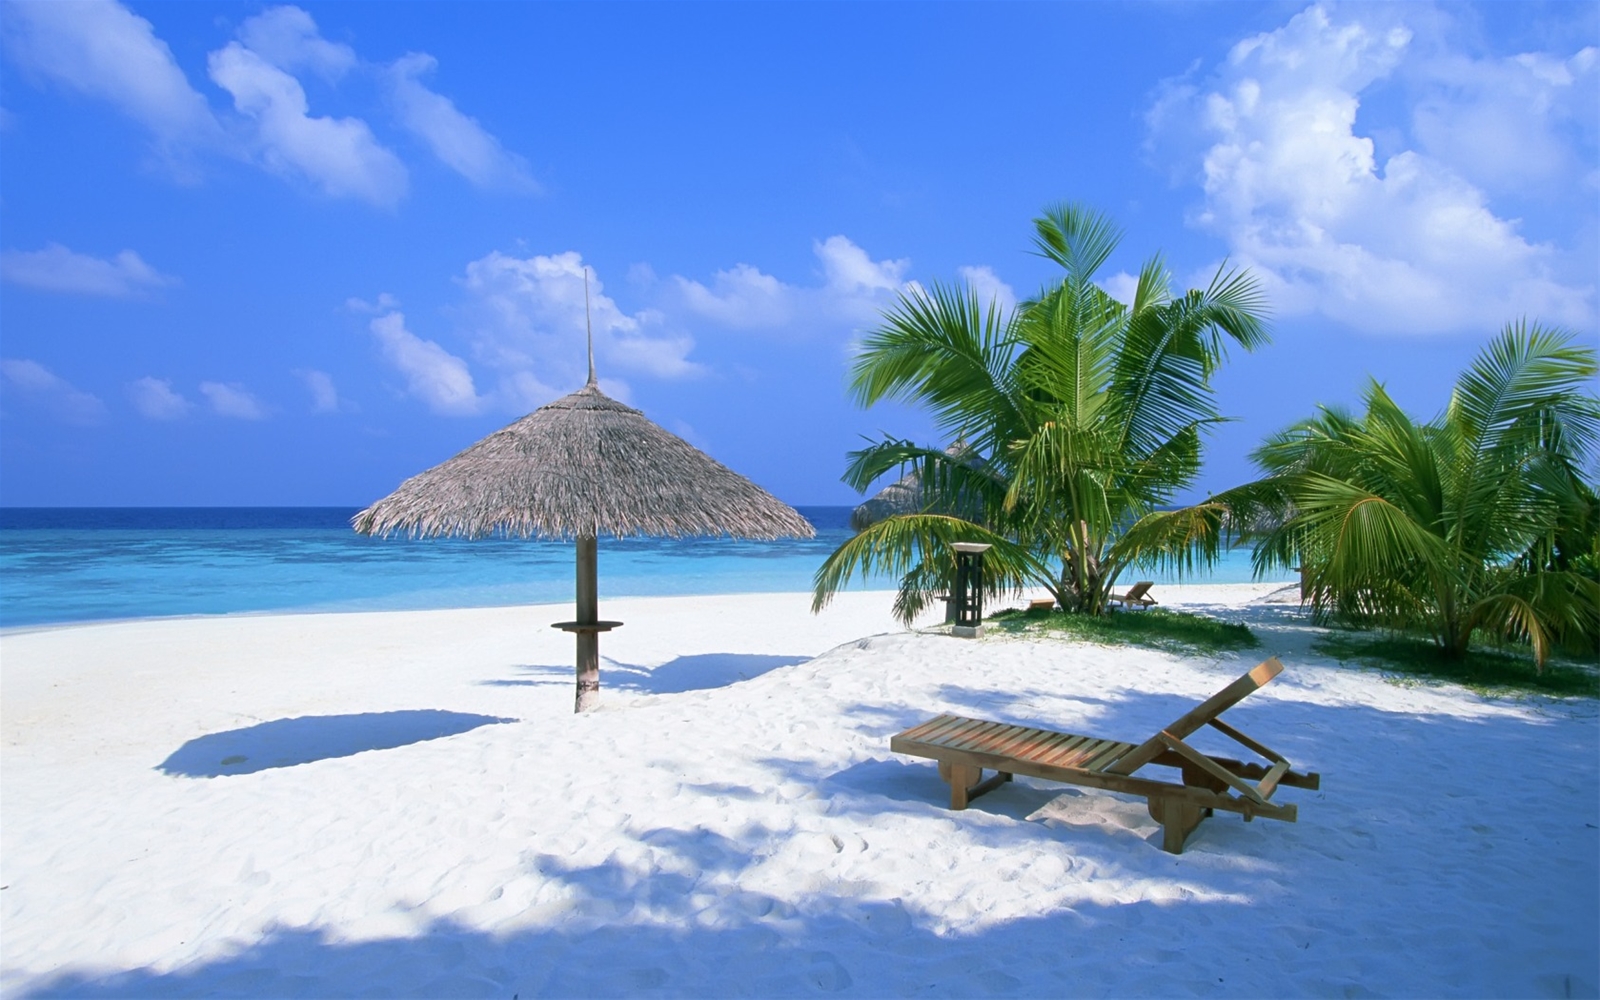 Chọn tour du lịch Tết Sài Gòn - Phú Quốc, du khách sẽ được đắm mình bên biển xanh và cát trắng